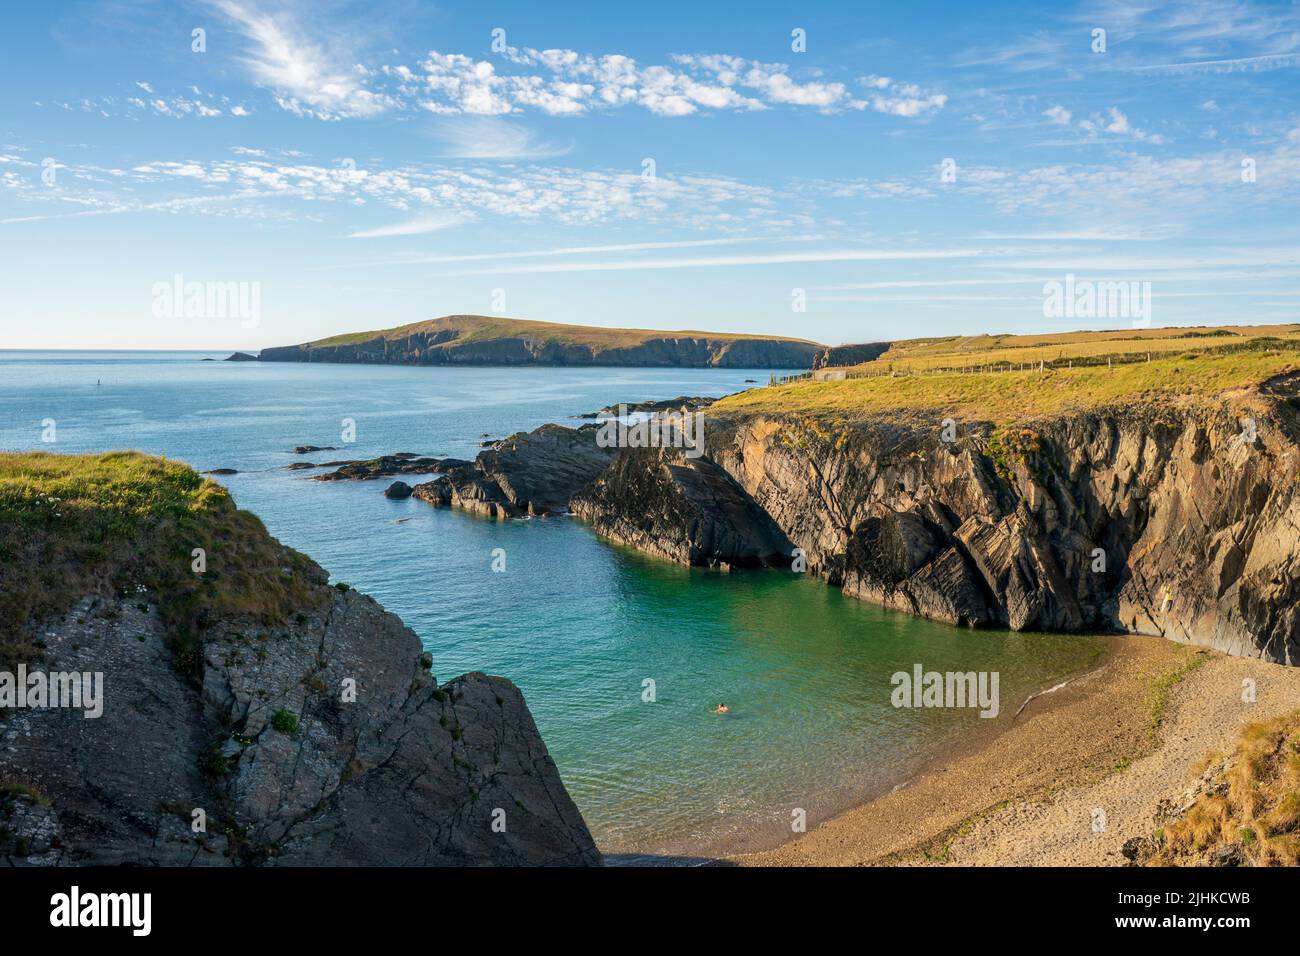 Une vue sur le paysage de la côte de la baie de Cardigan avec l'île au loin dans l'ouest du pays de Galles Banque D'Images